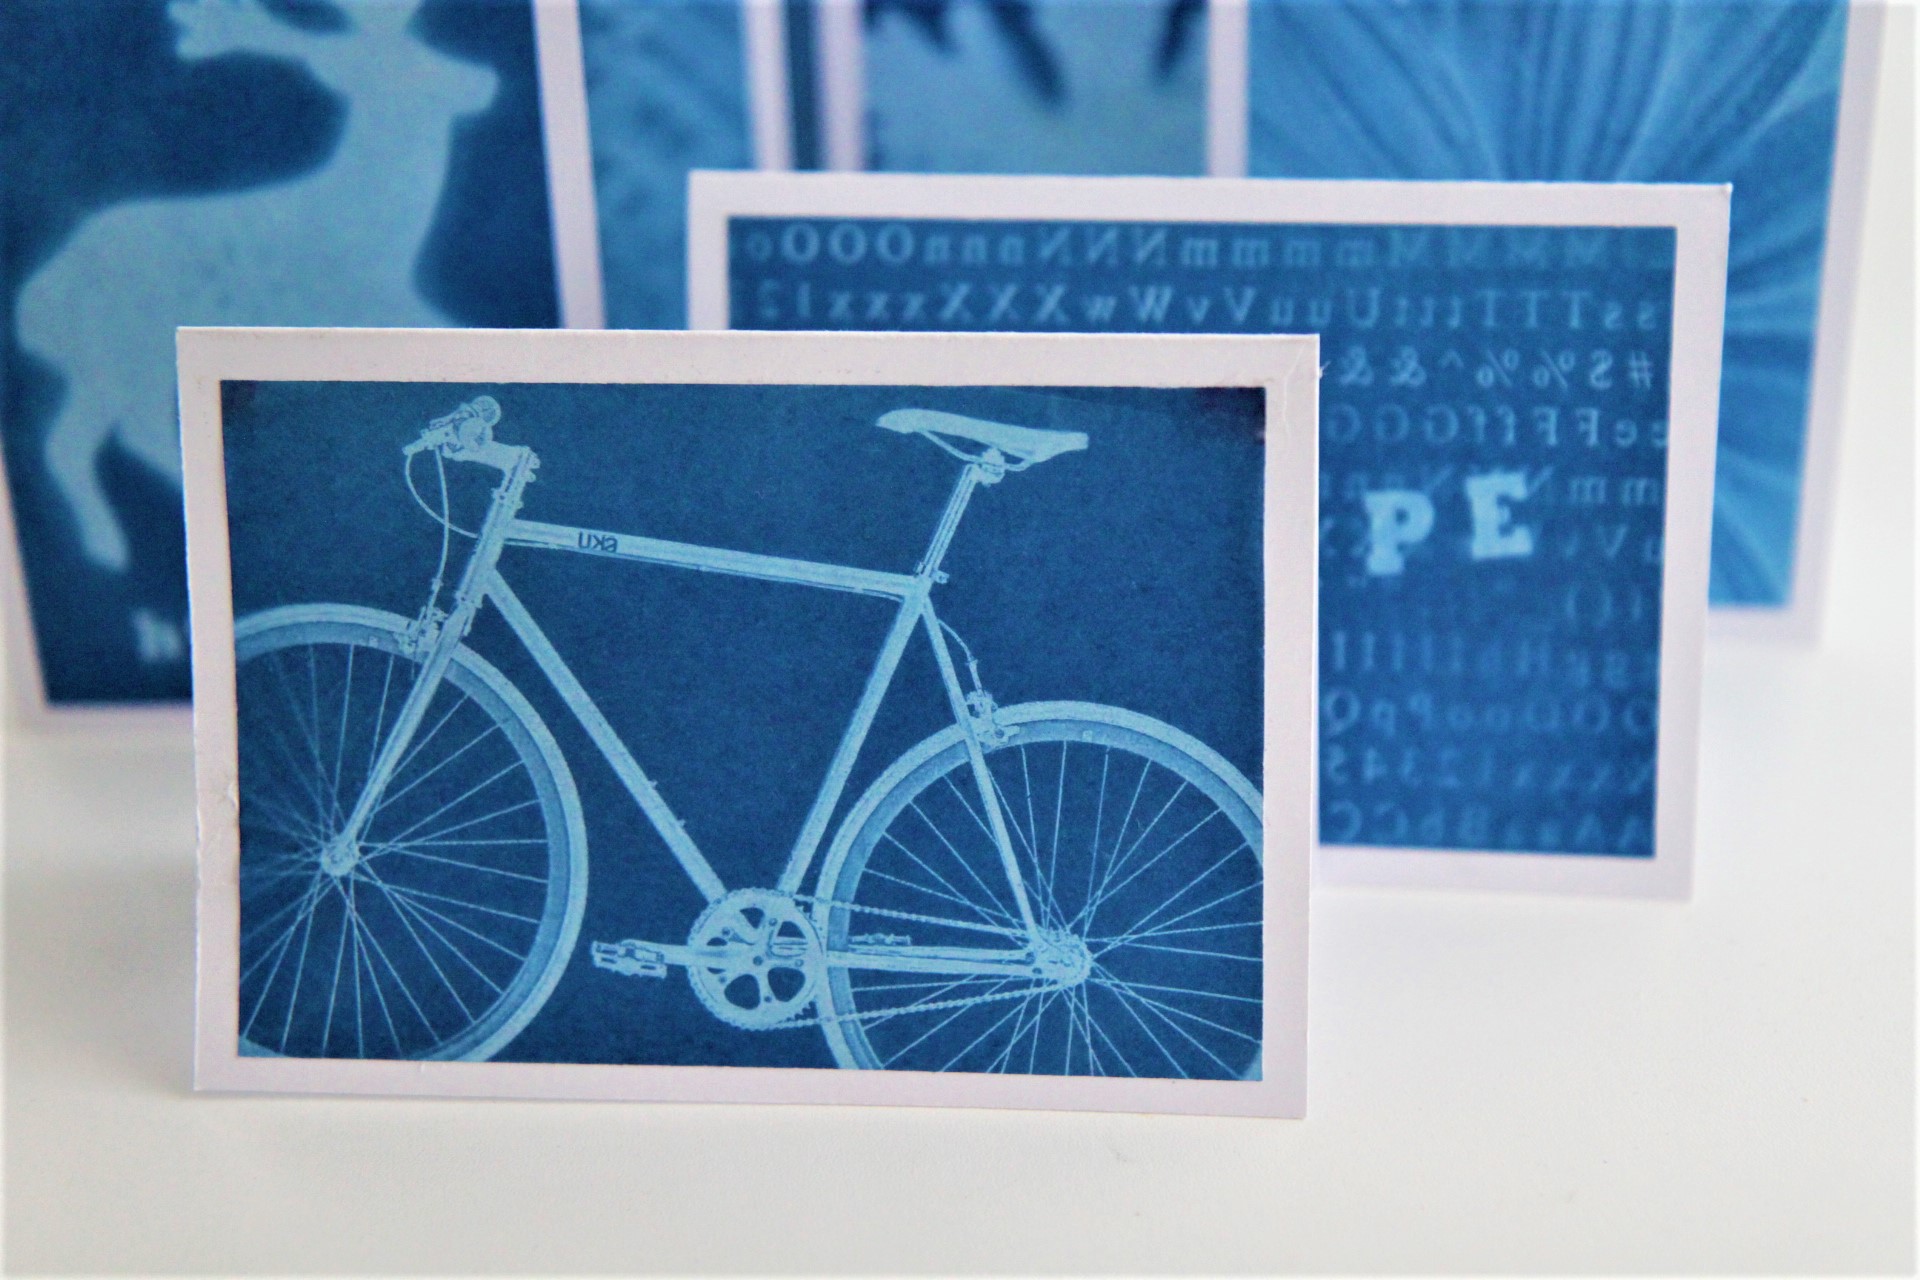 Cyanotype Photogram Greeting Card Making Kit: 4 pack